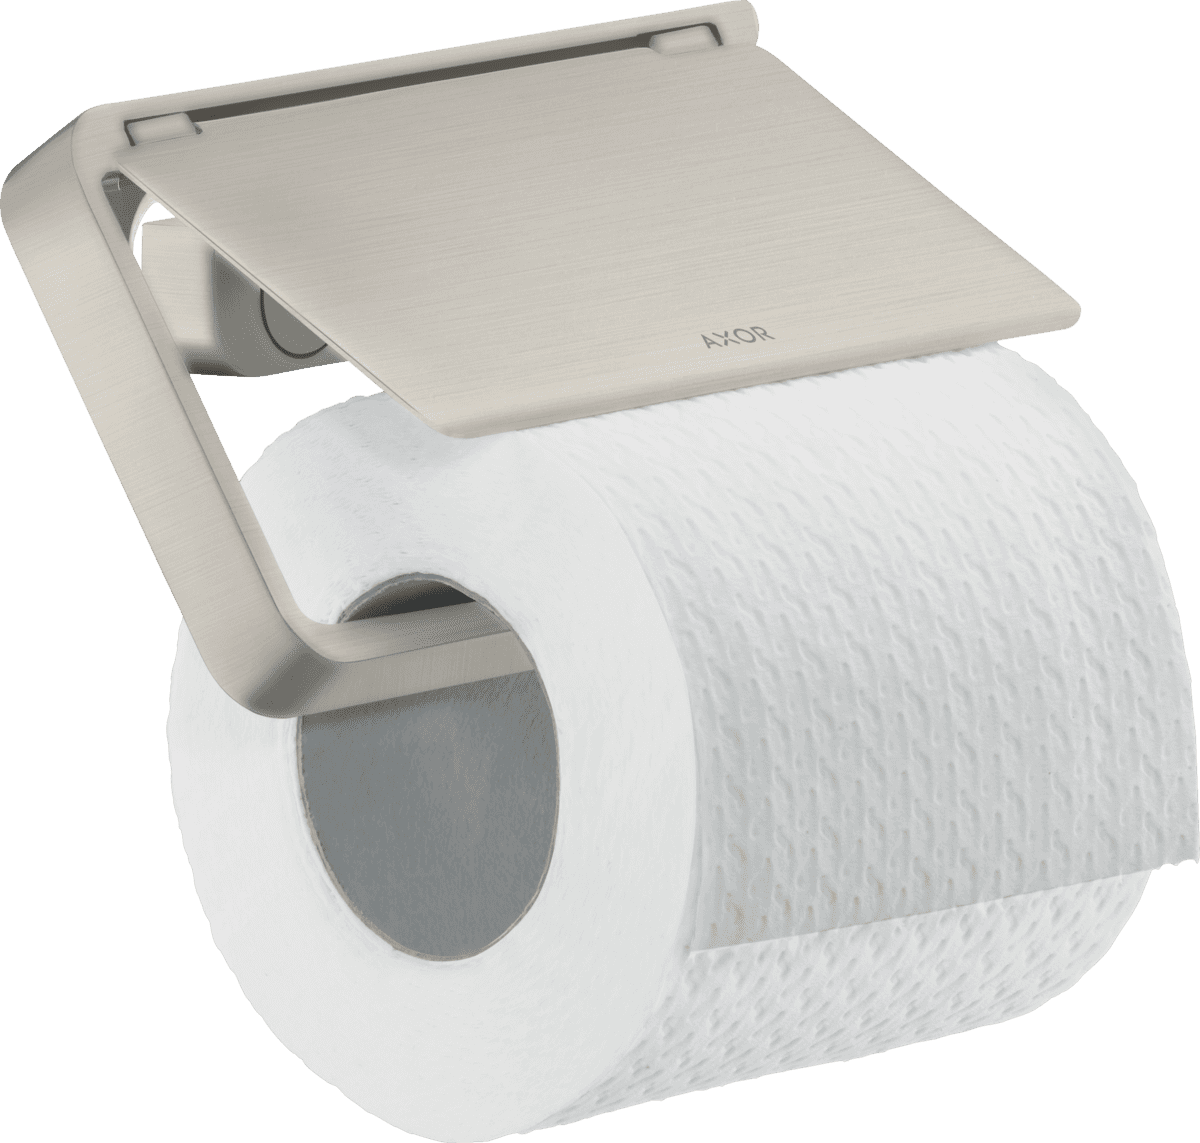 εικόνα του HANSGROHE AXOR Universal Softsquare Toilet paper holder with cover #42836800 - Stainless Steel Optic